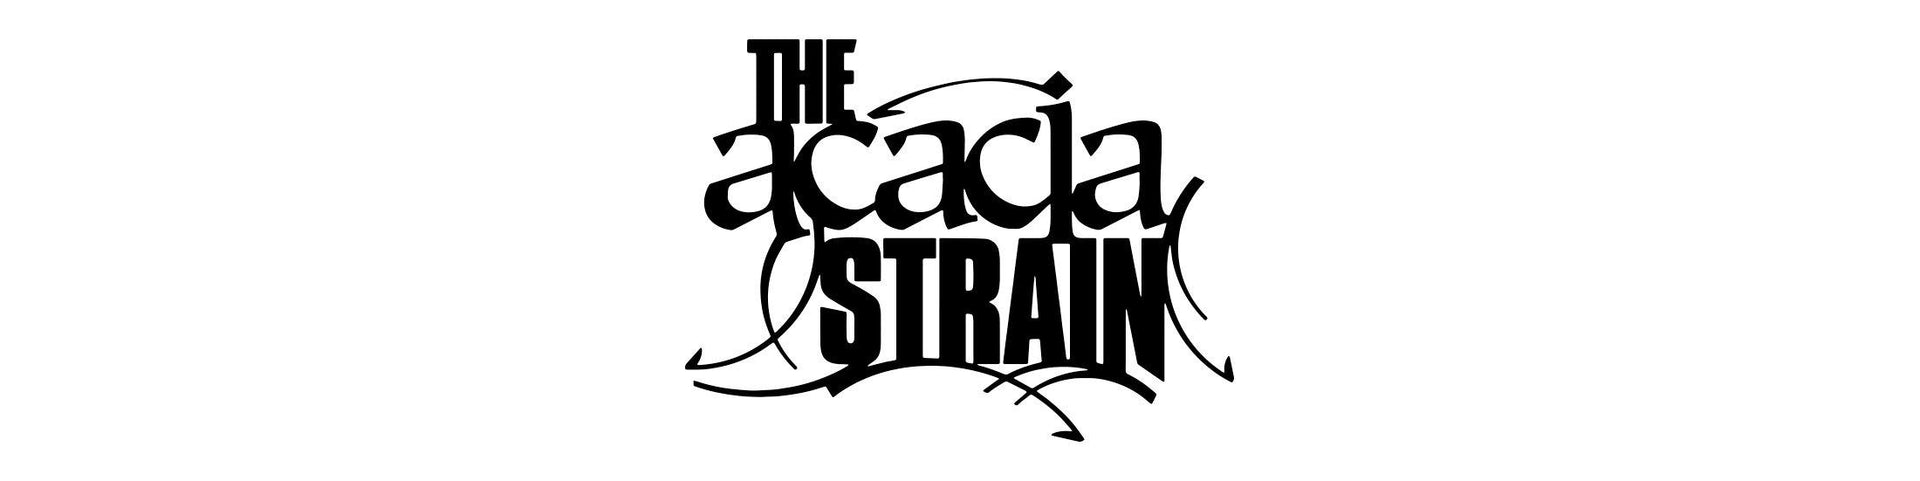 Shop – The Acacia Strain – Band & Music Merch – Cold Cuts Merch